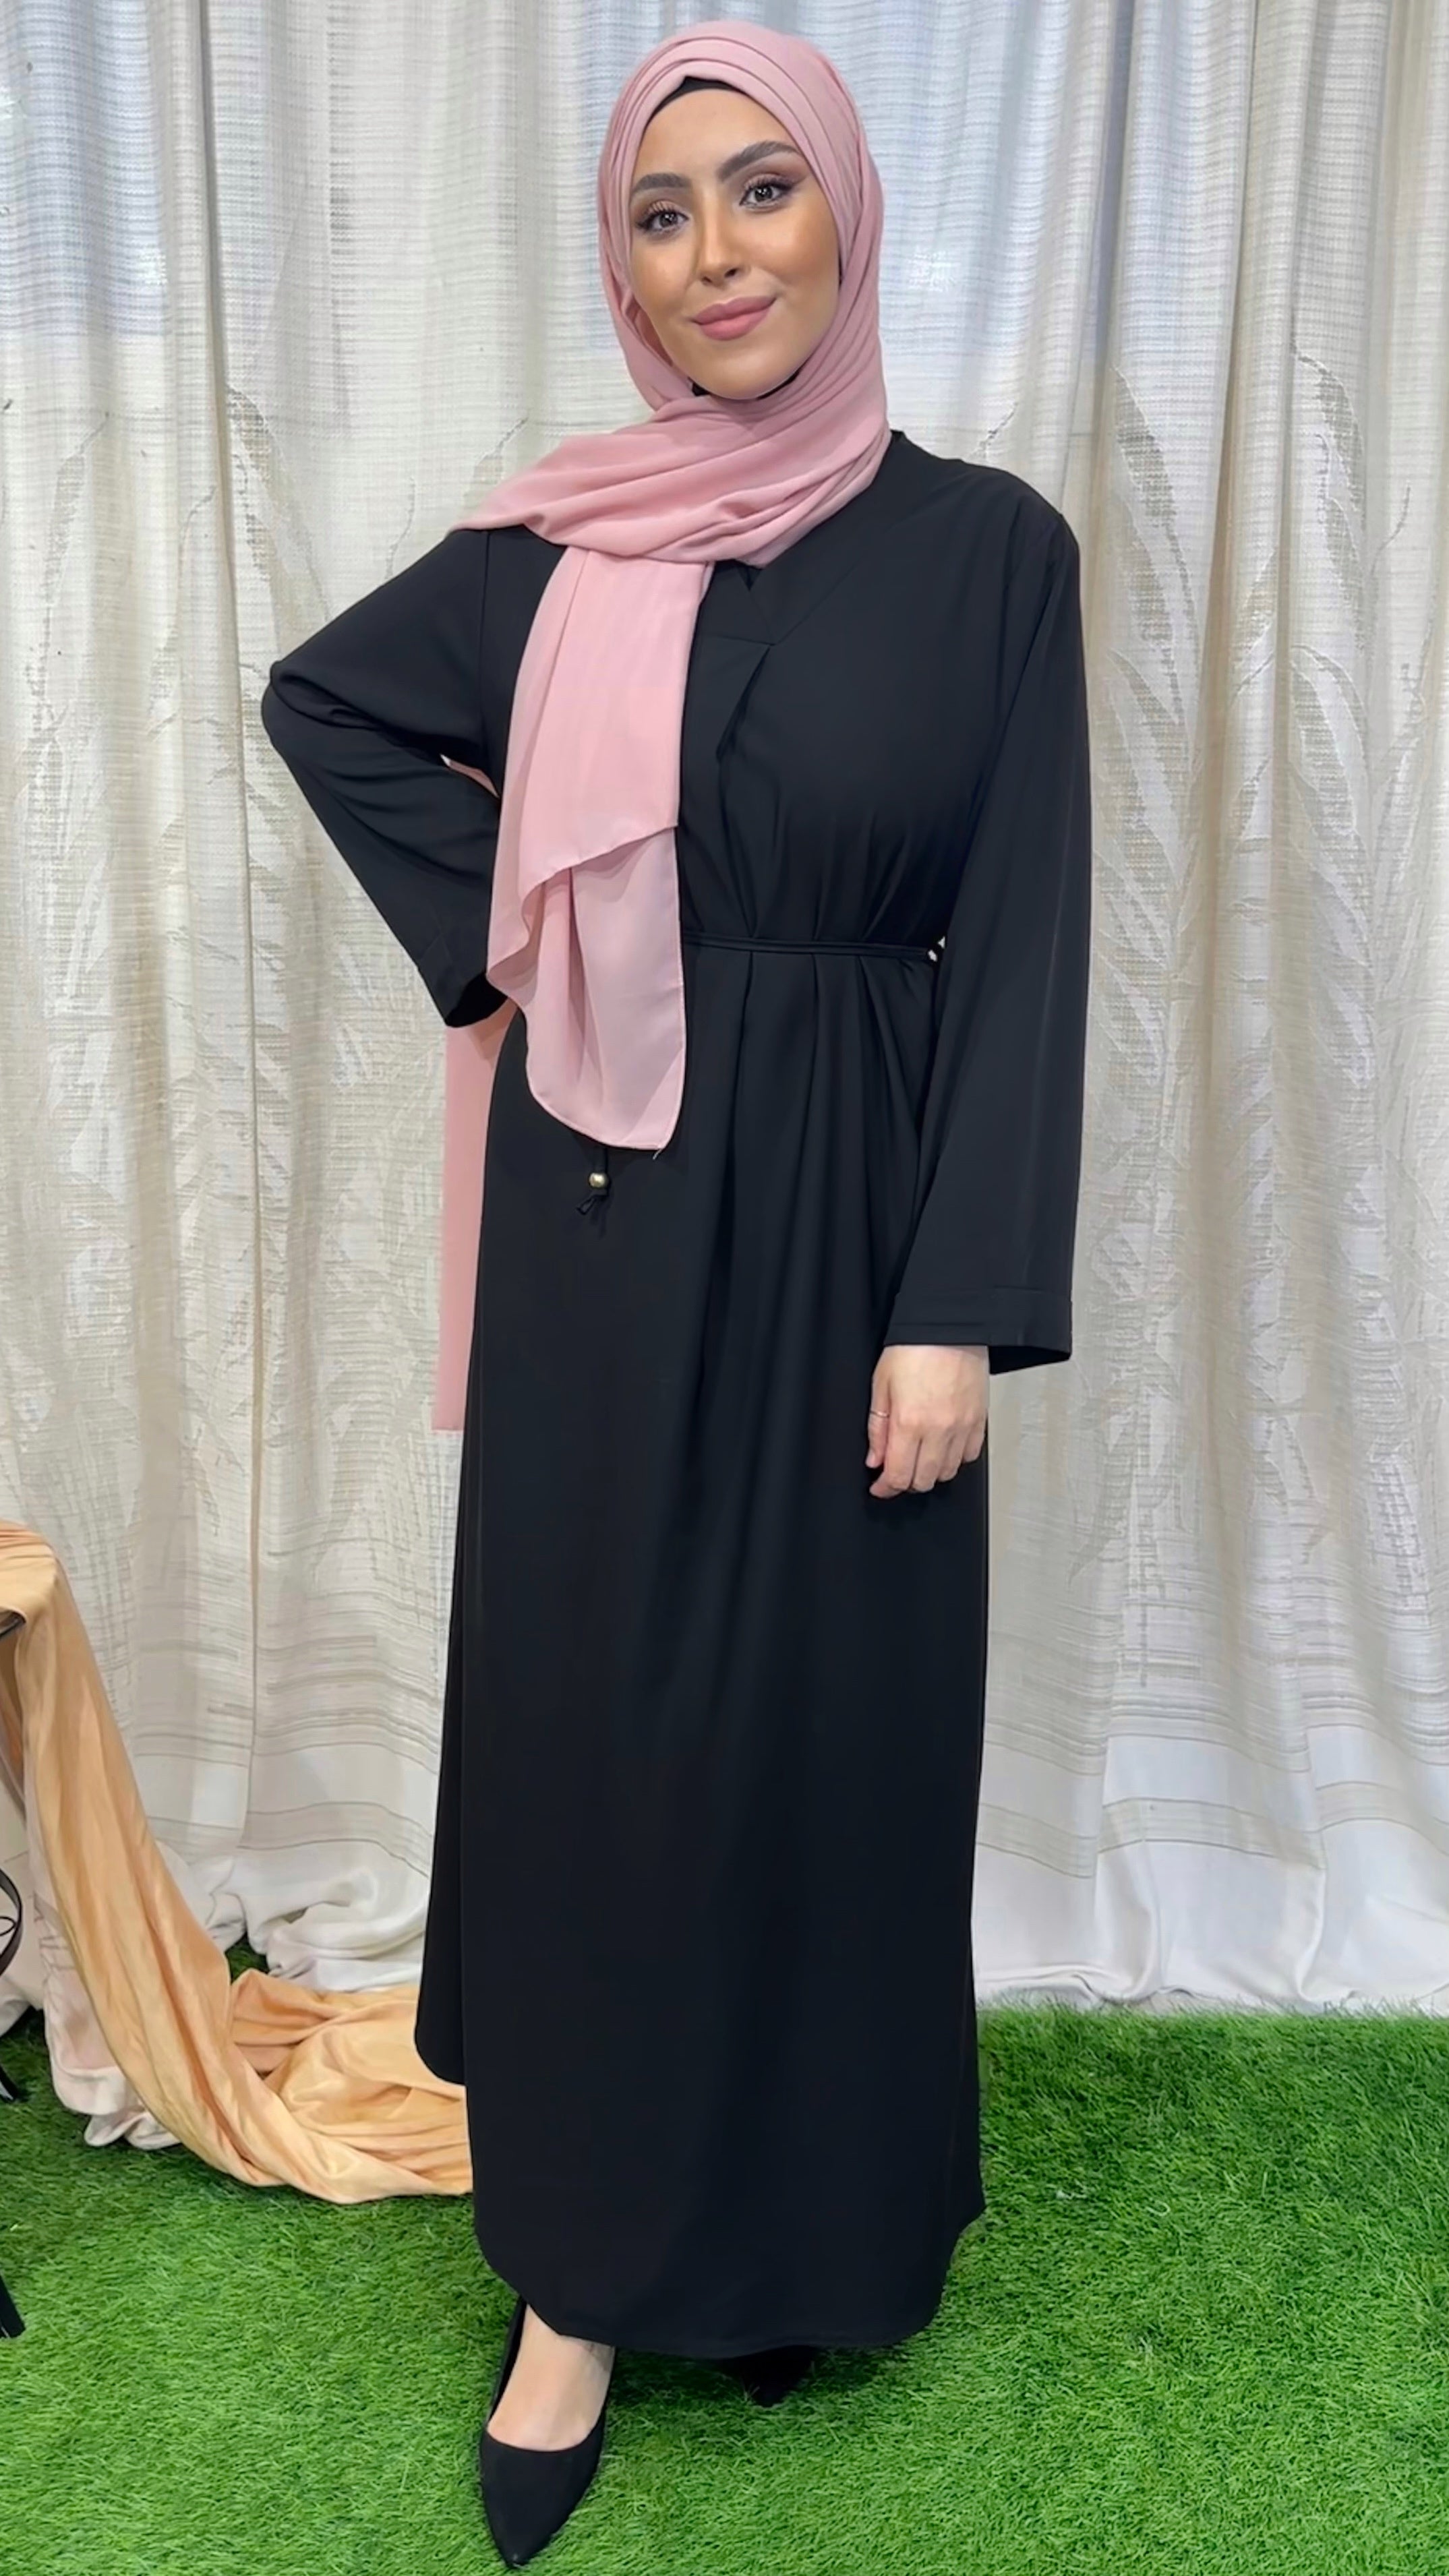 Vestito, abaya, semplice, collo a V, maniche larghe,  colore unico, cintutino in vita, polsi arricciati, indossato da manichino, Hijab Paradise, nero, hijab rosa, donna musulmana